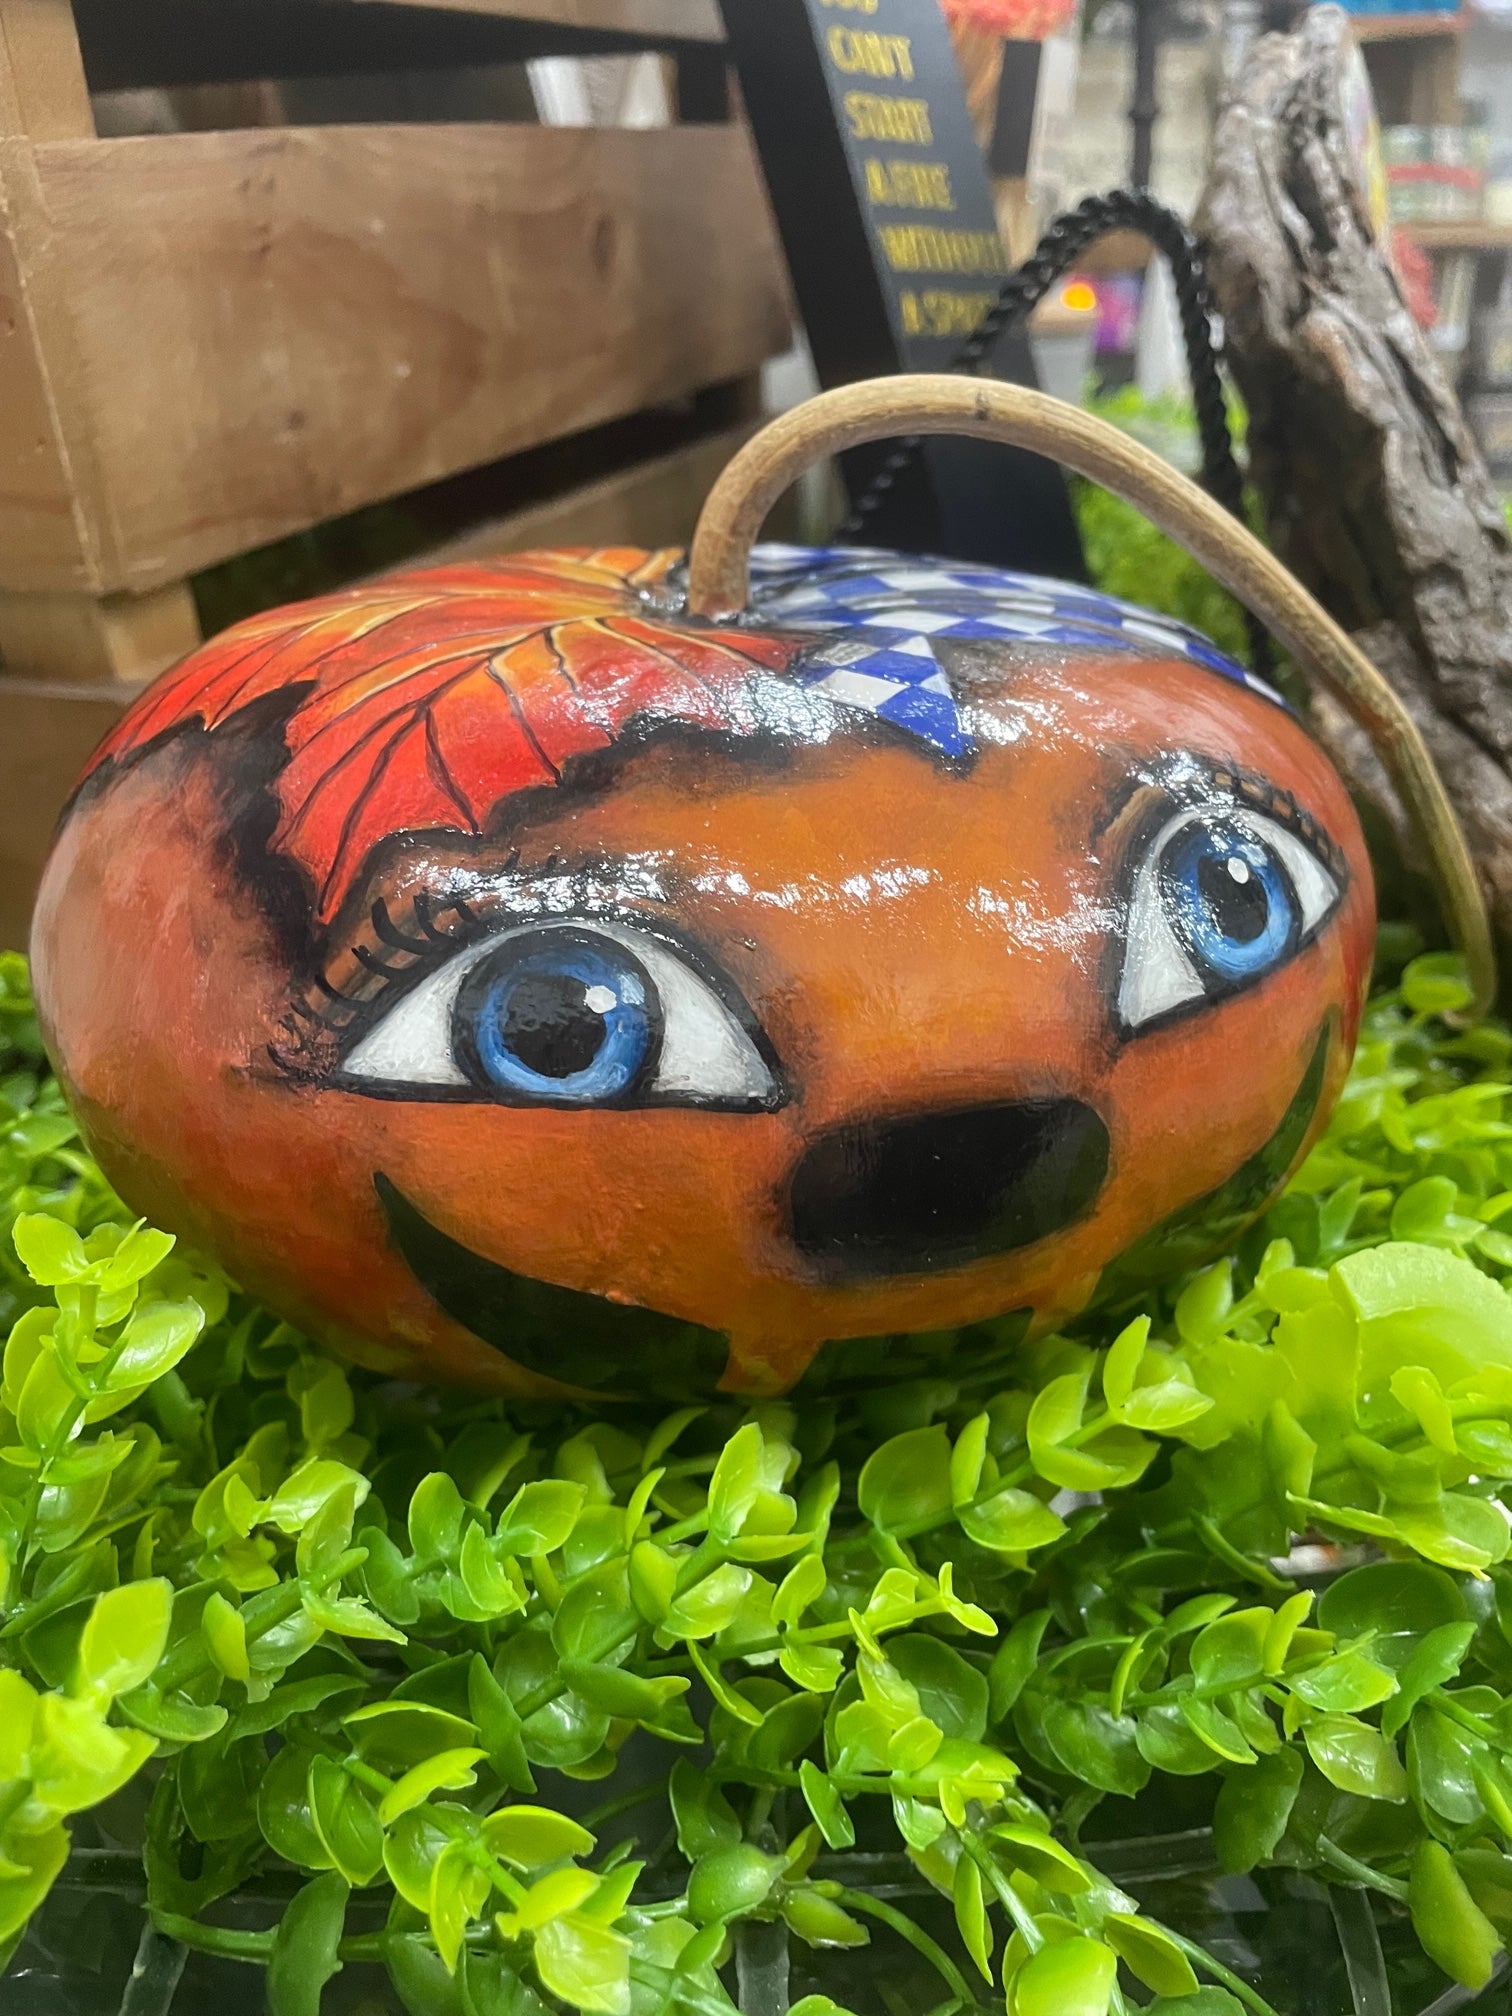 U of M Pumpkin gourd painted by DJ Kelly, Memphis Artist